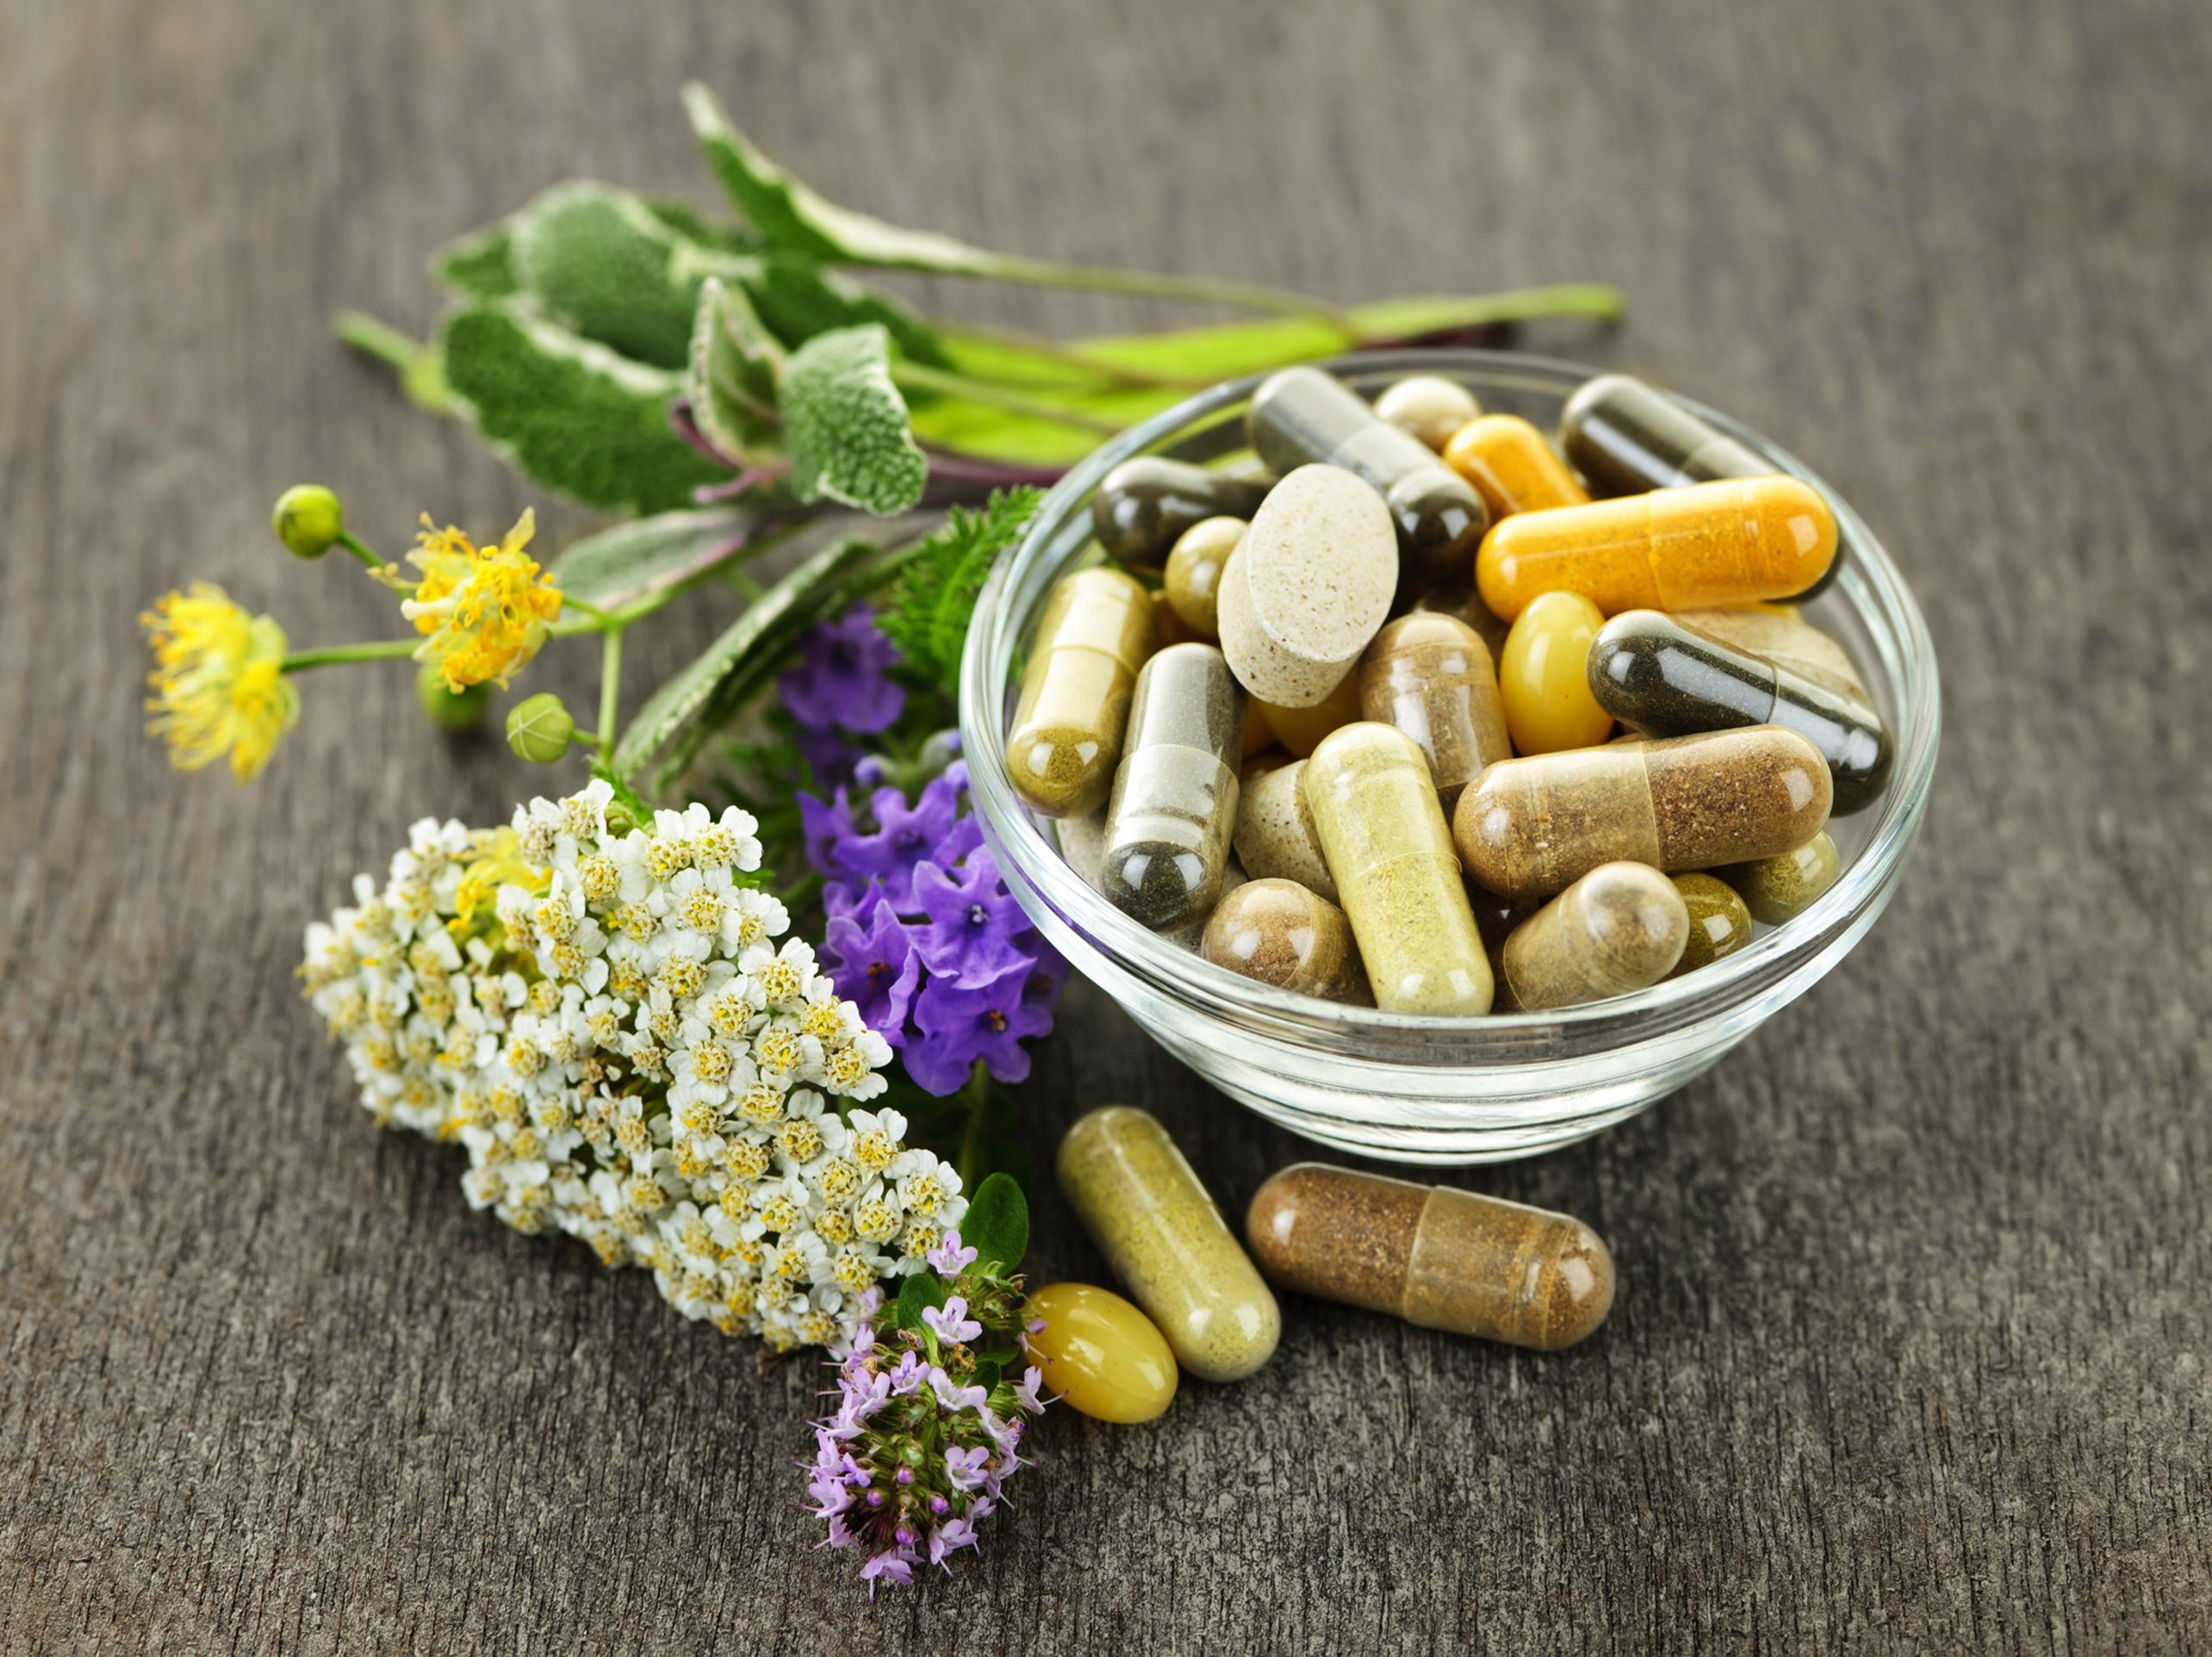 Certains compléments alimentaires à base de plantes ont des effets proches des médicaments sans être aussi bien encadrés. © Elenathewise / IStock.com